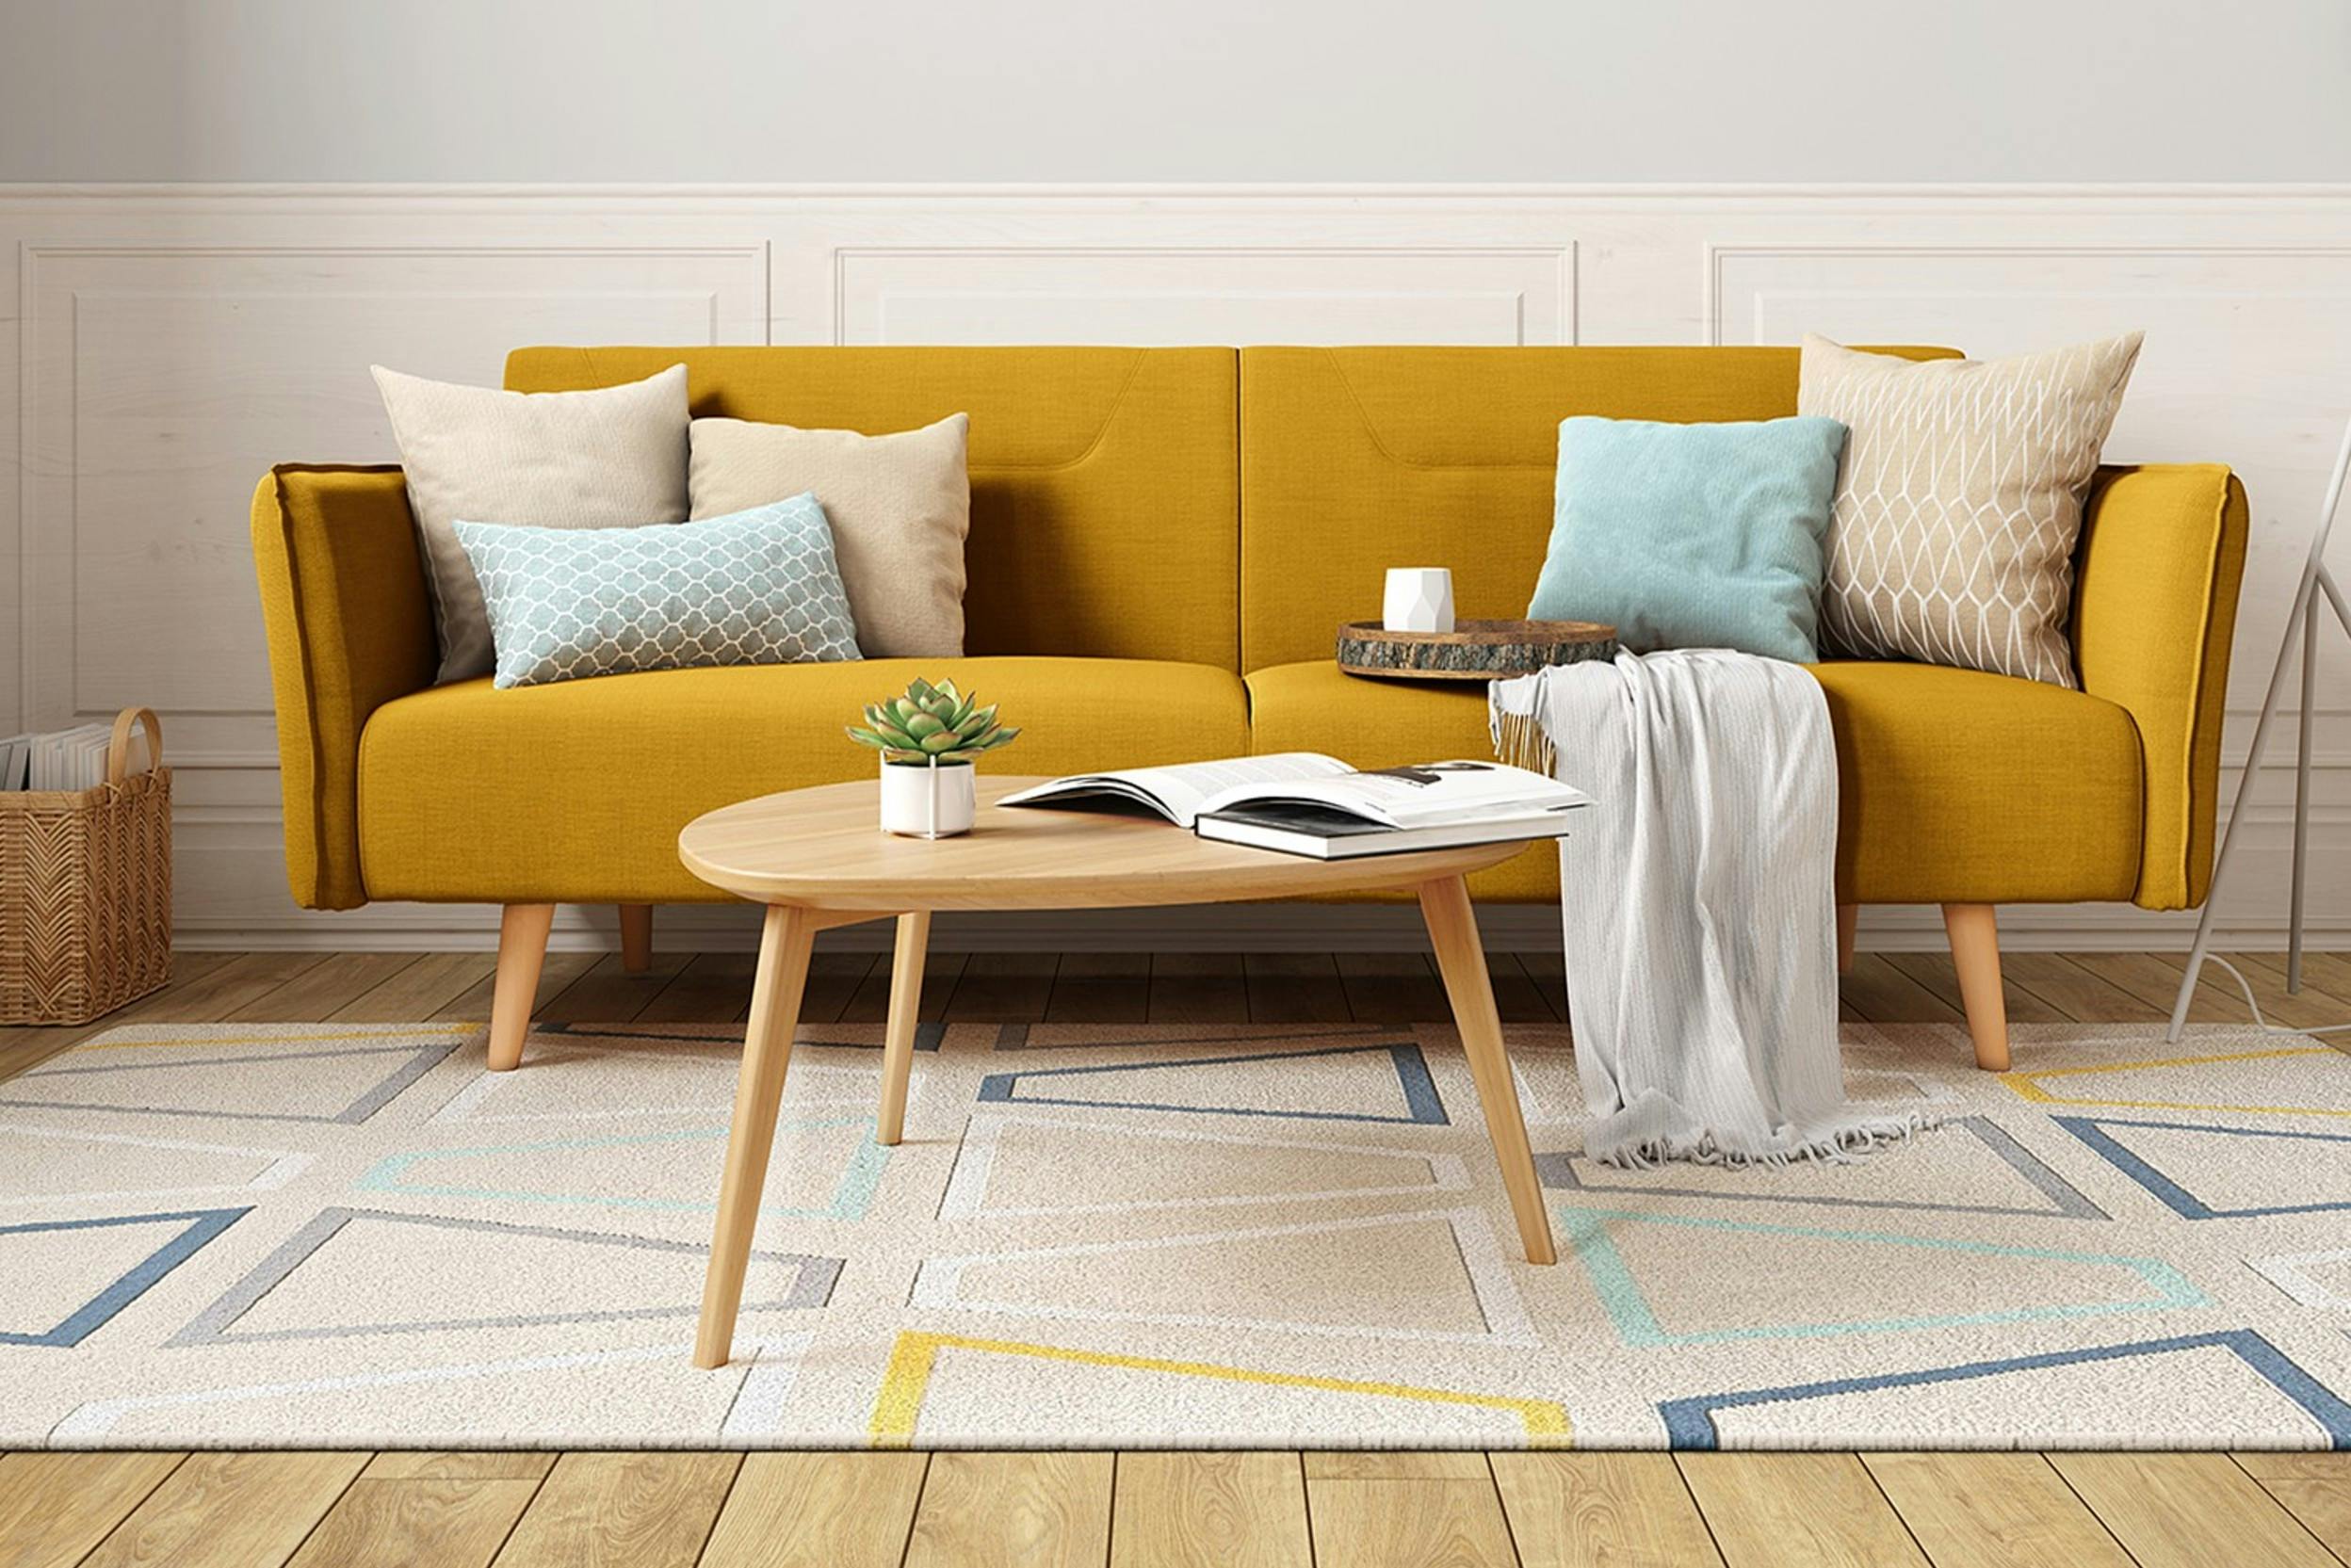 Wohnzimmer mit gelbem Retro-Sofa mit beigen und blauen Kissen, buntem Teppich und einem Couchtisch